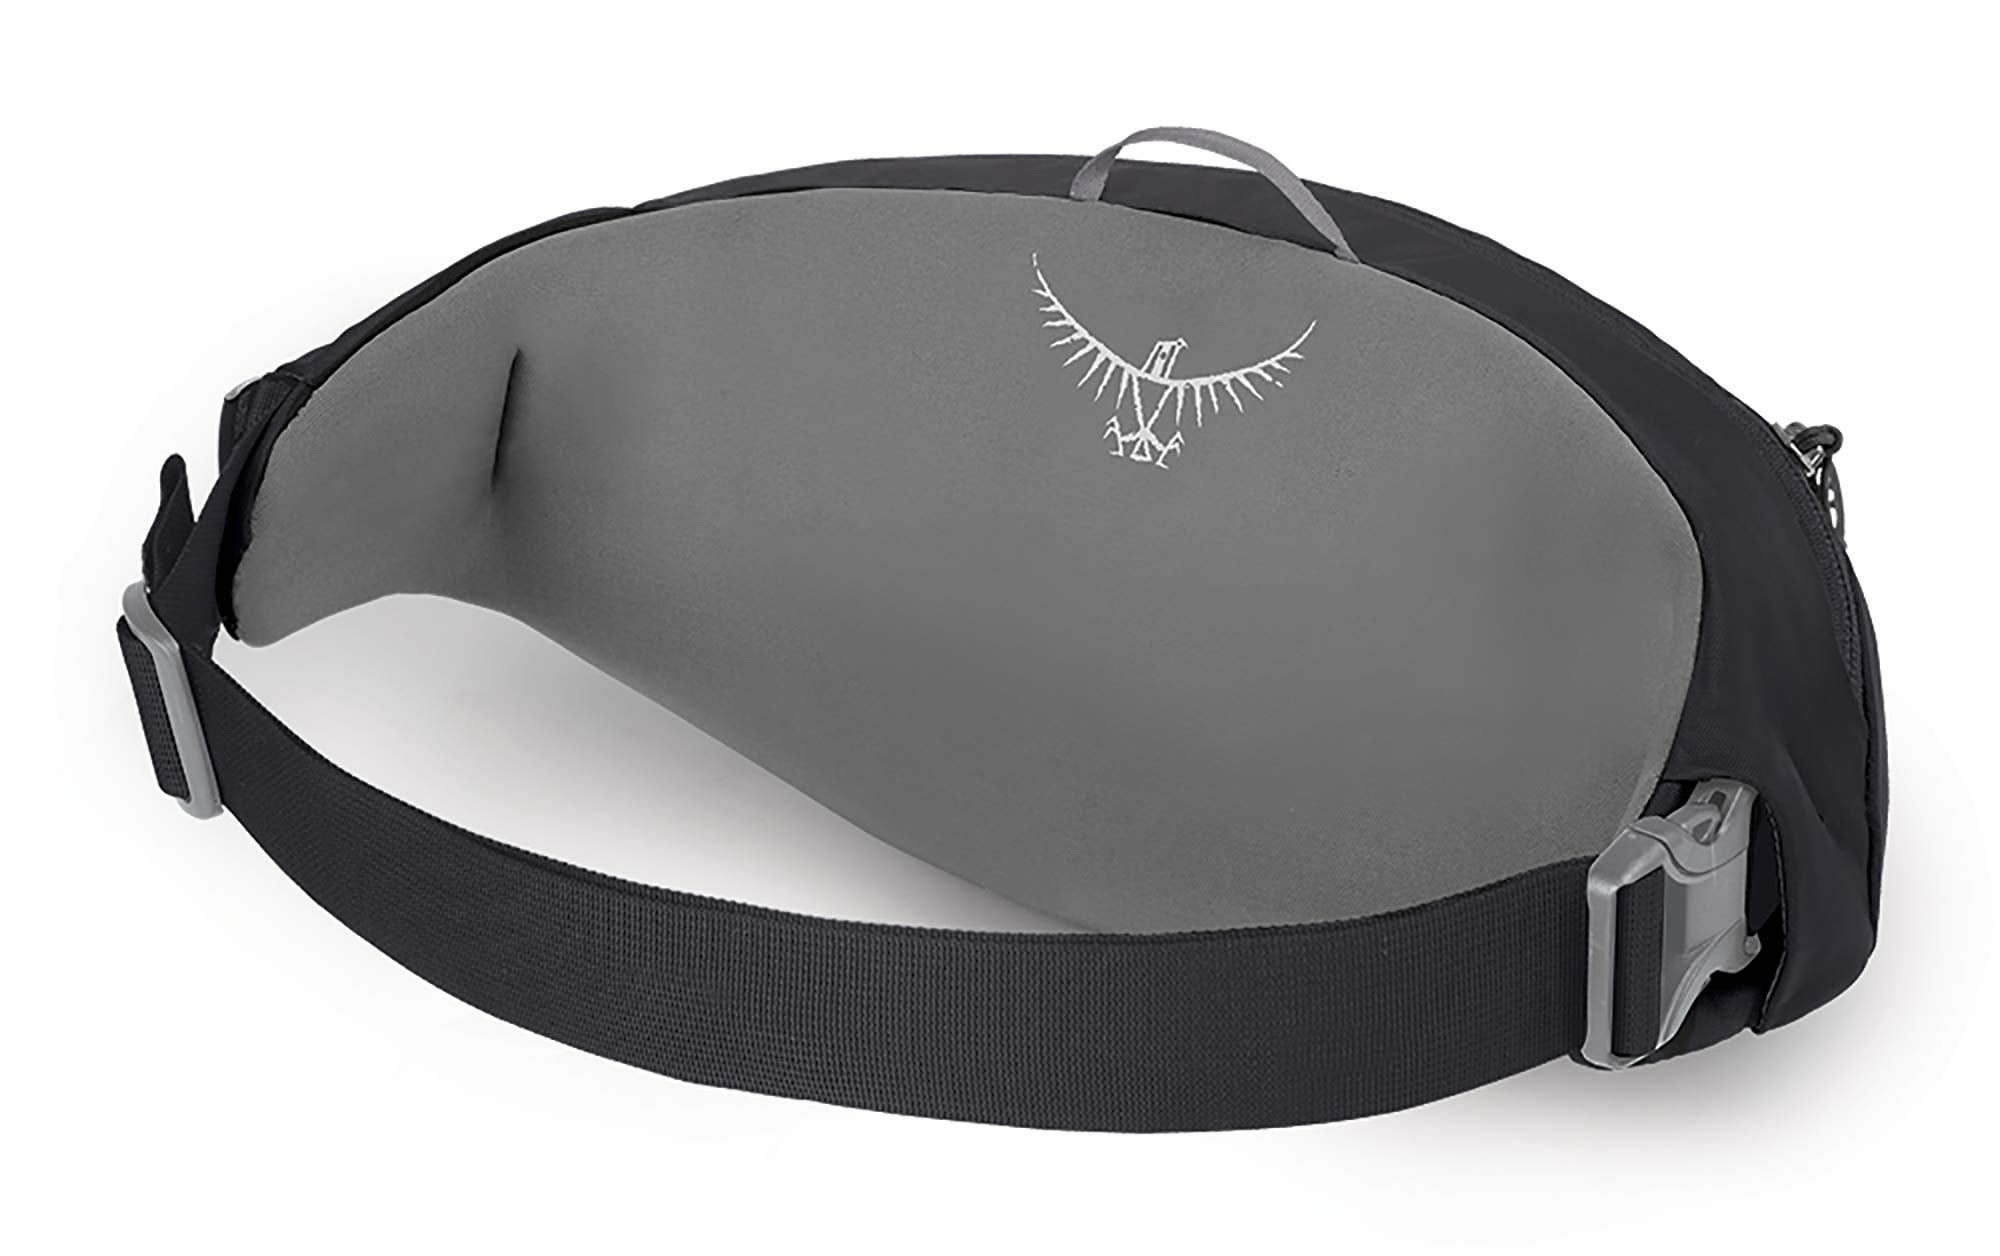  Osprey Daylite Shoulder Sling Bag, Black : Sports & Outdoors